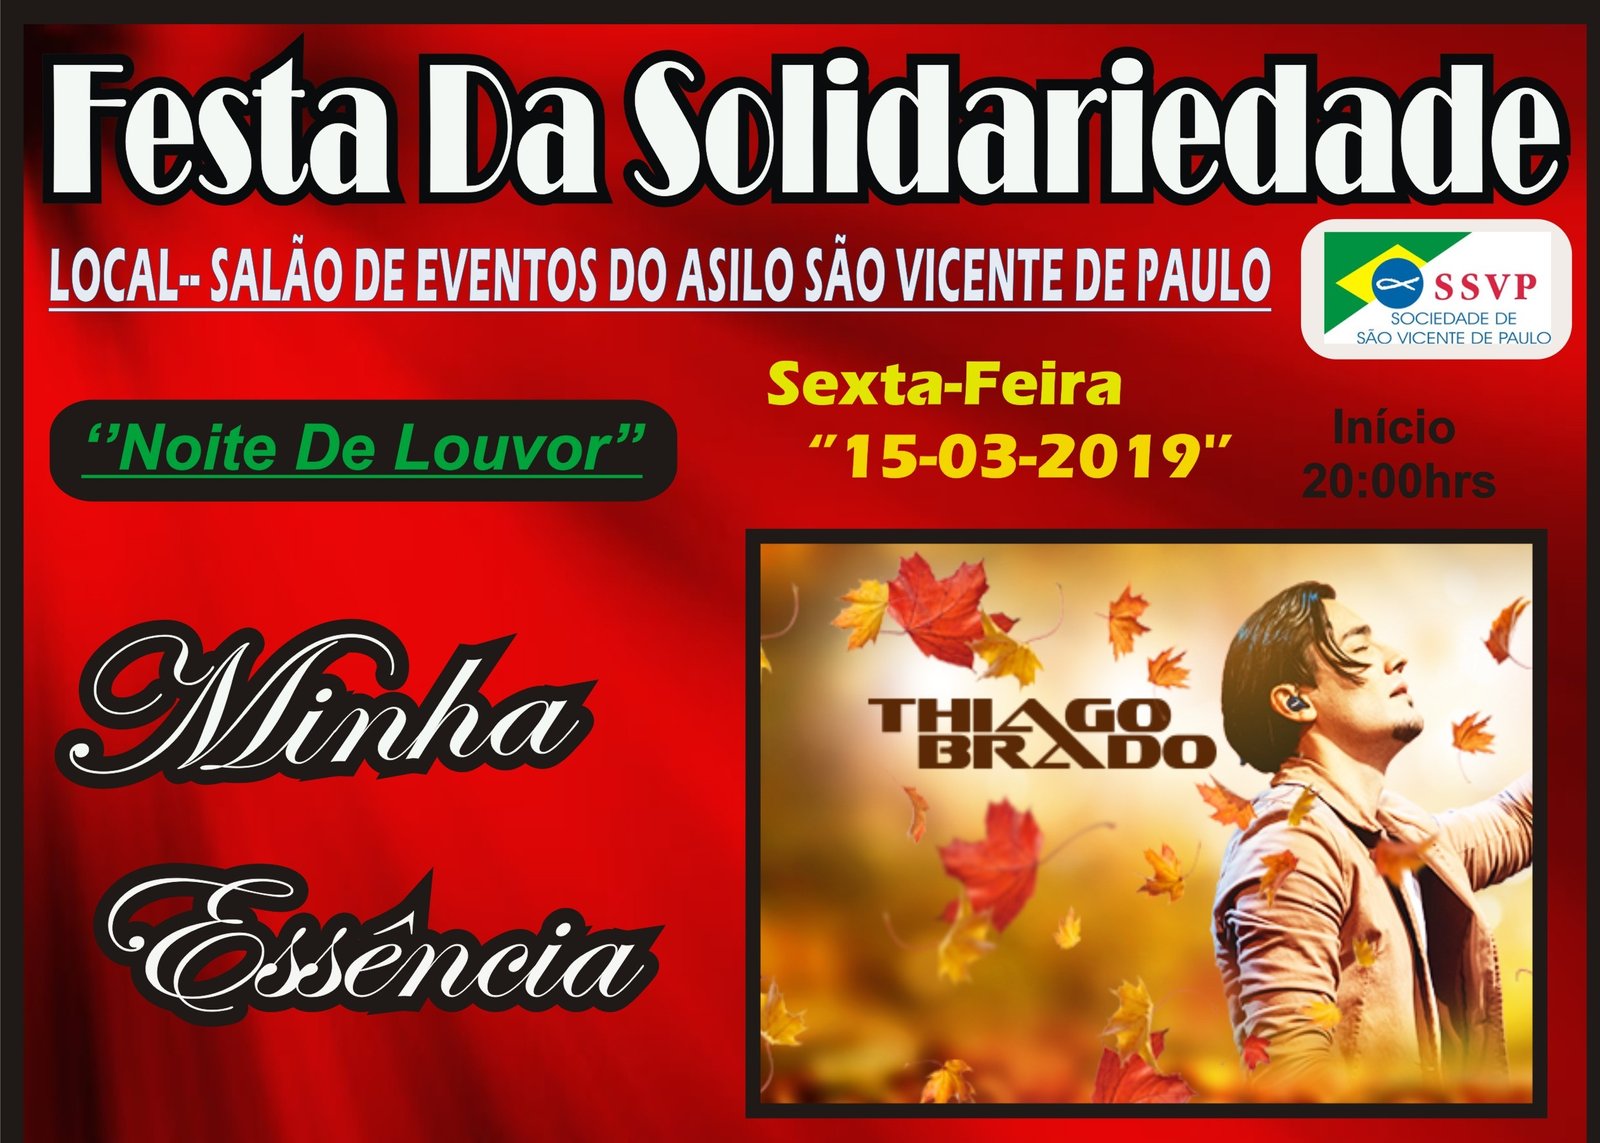 Festa da Solidariedade em prol do Asilo São Vicente de Paulo